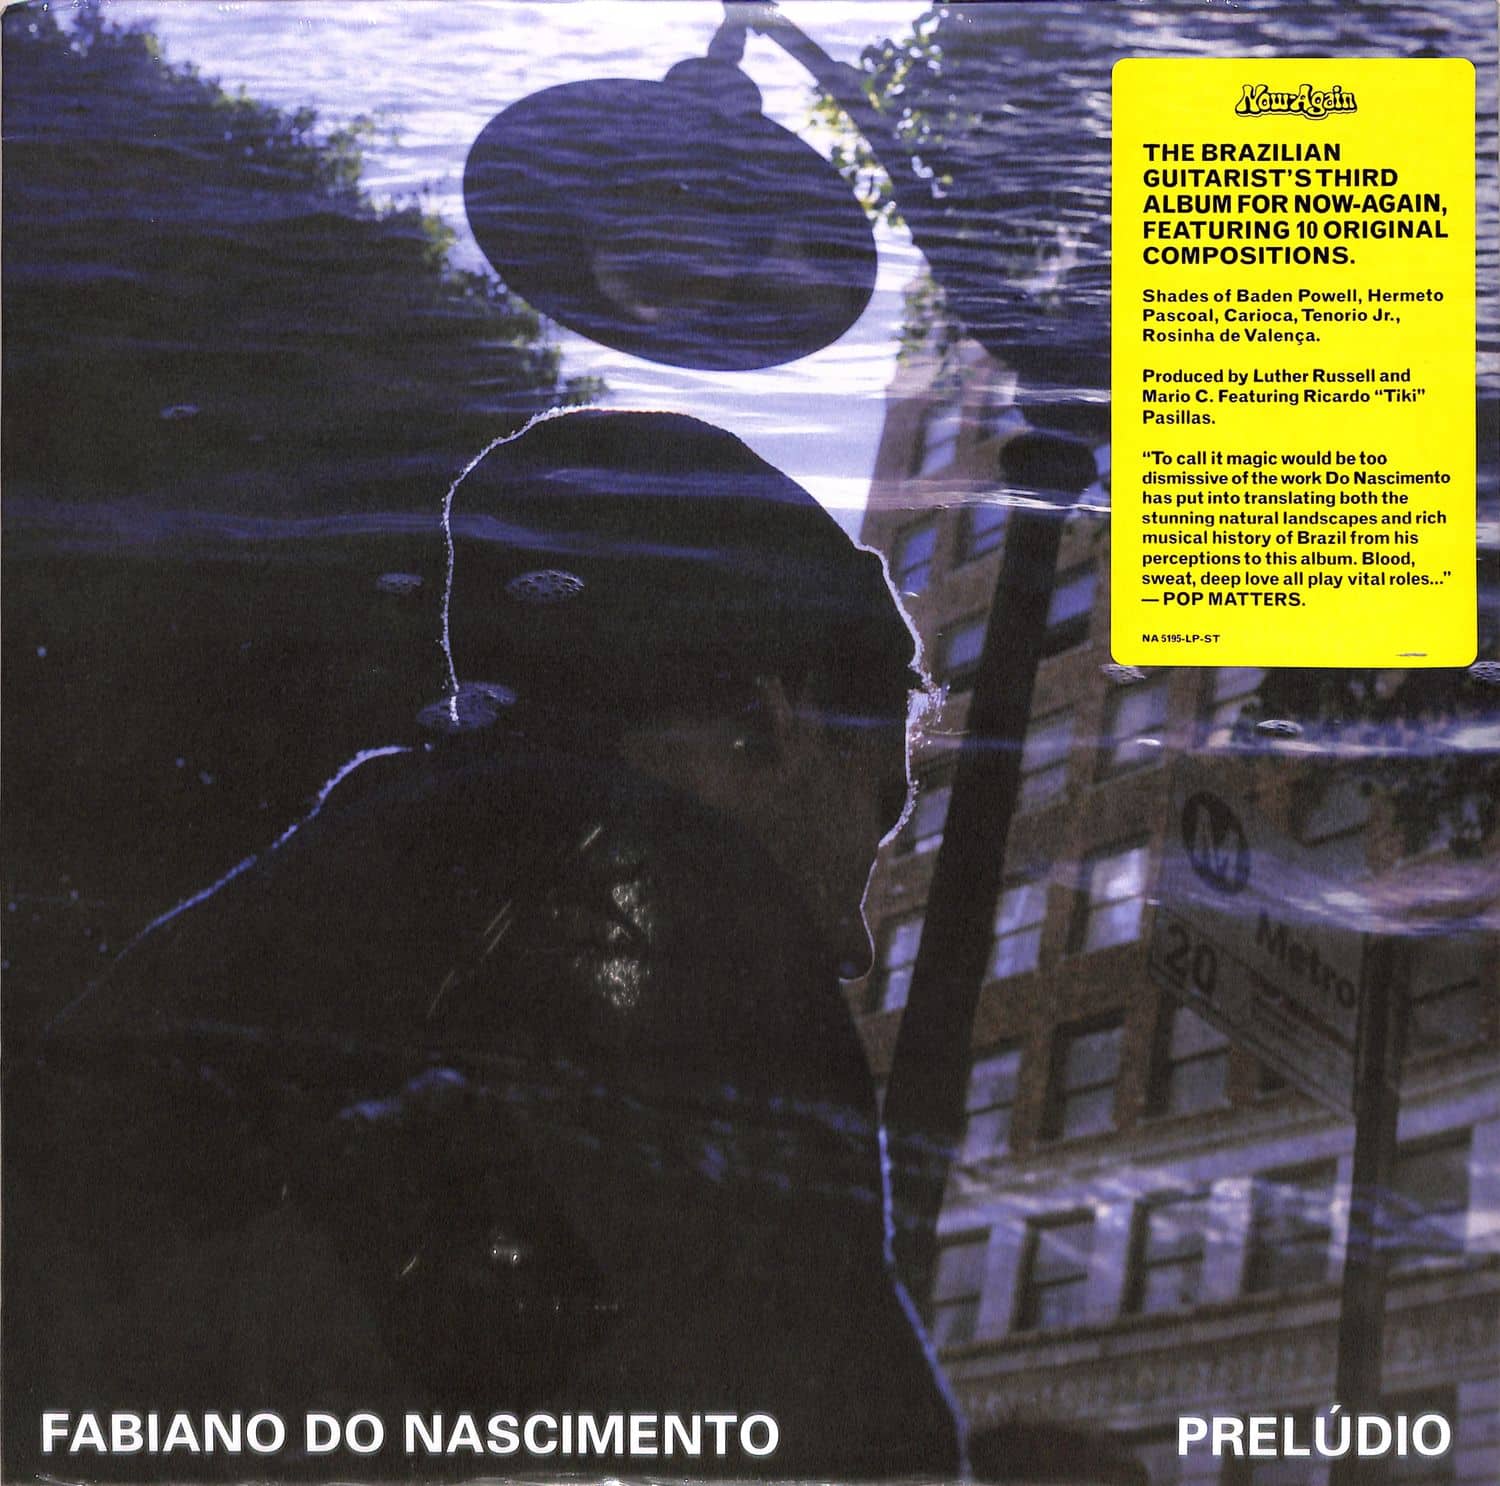 Fabiano Do Nascimento - PRELUDIO 